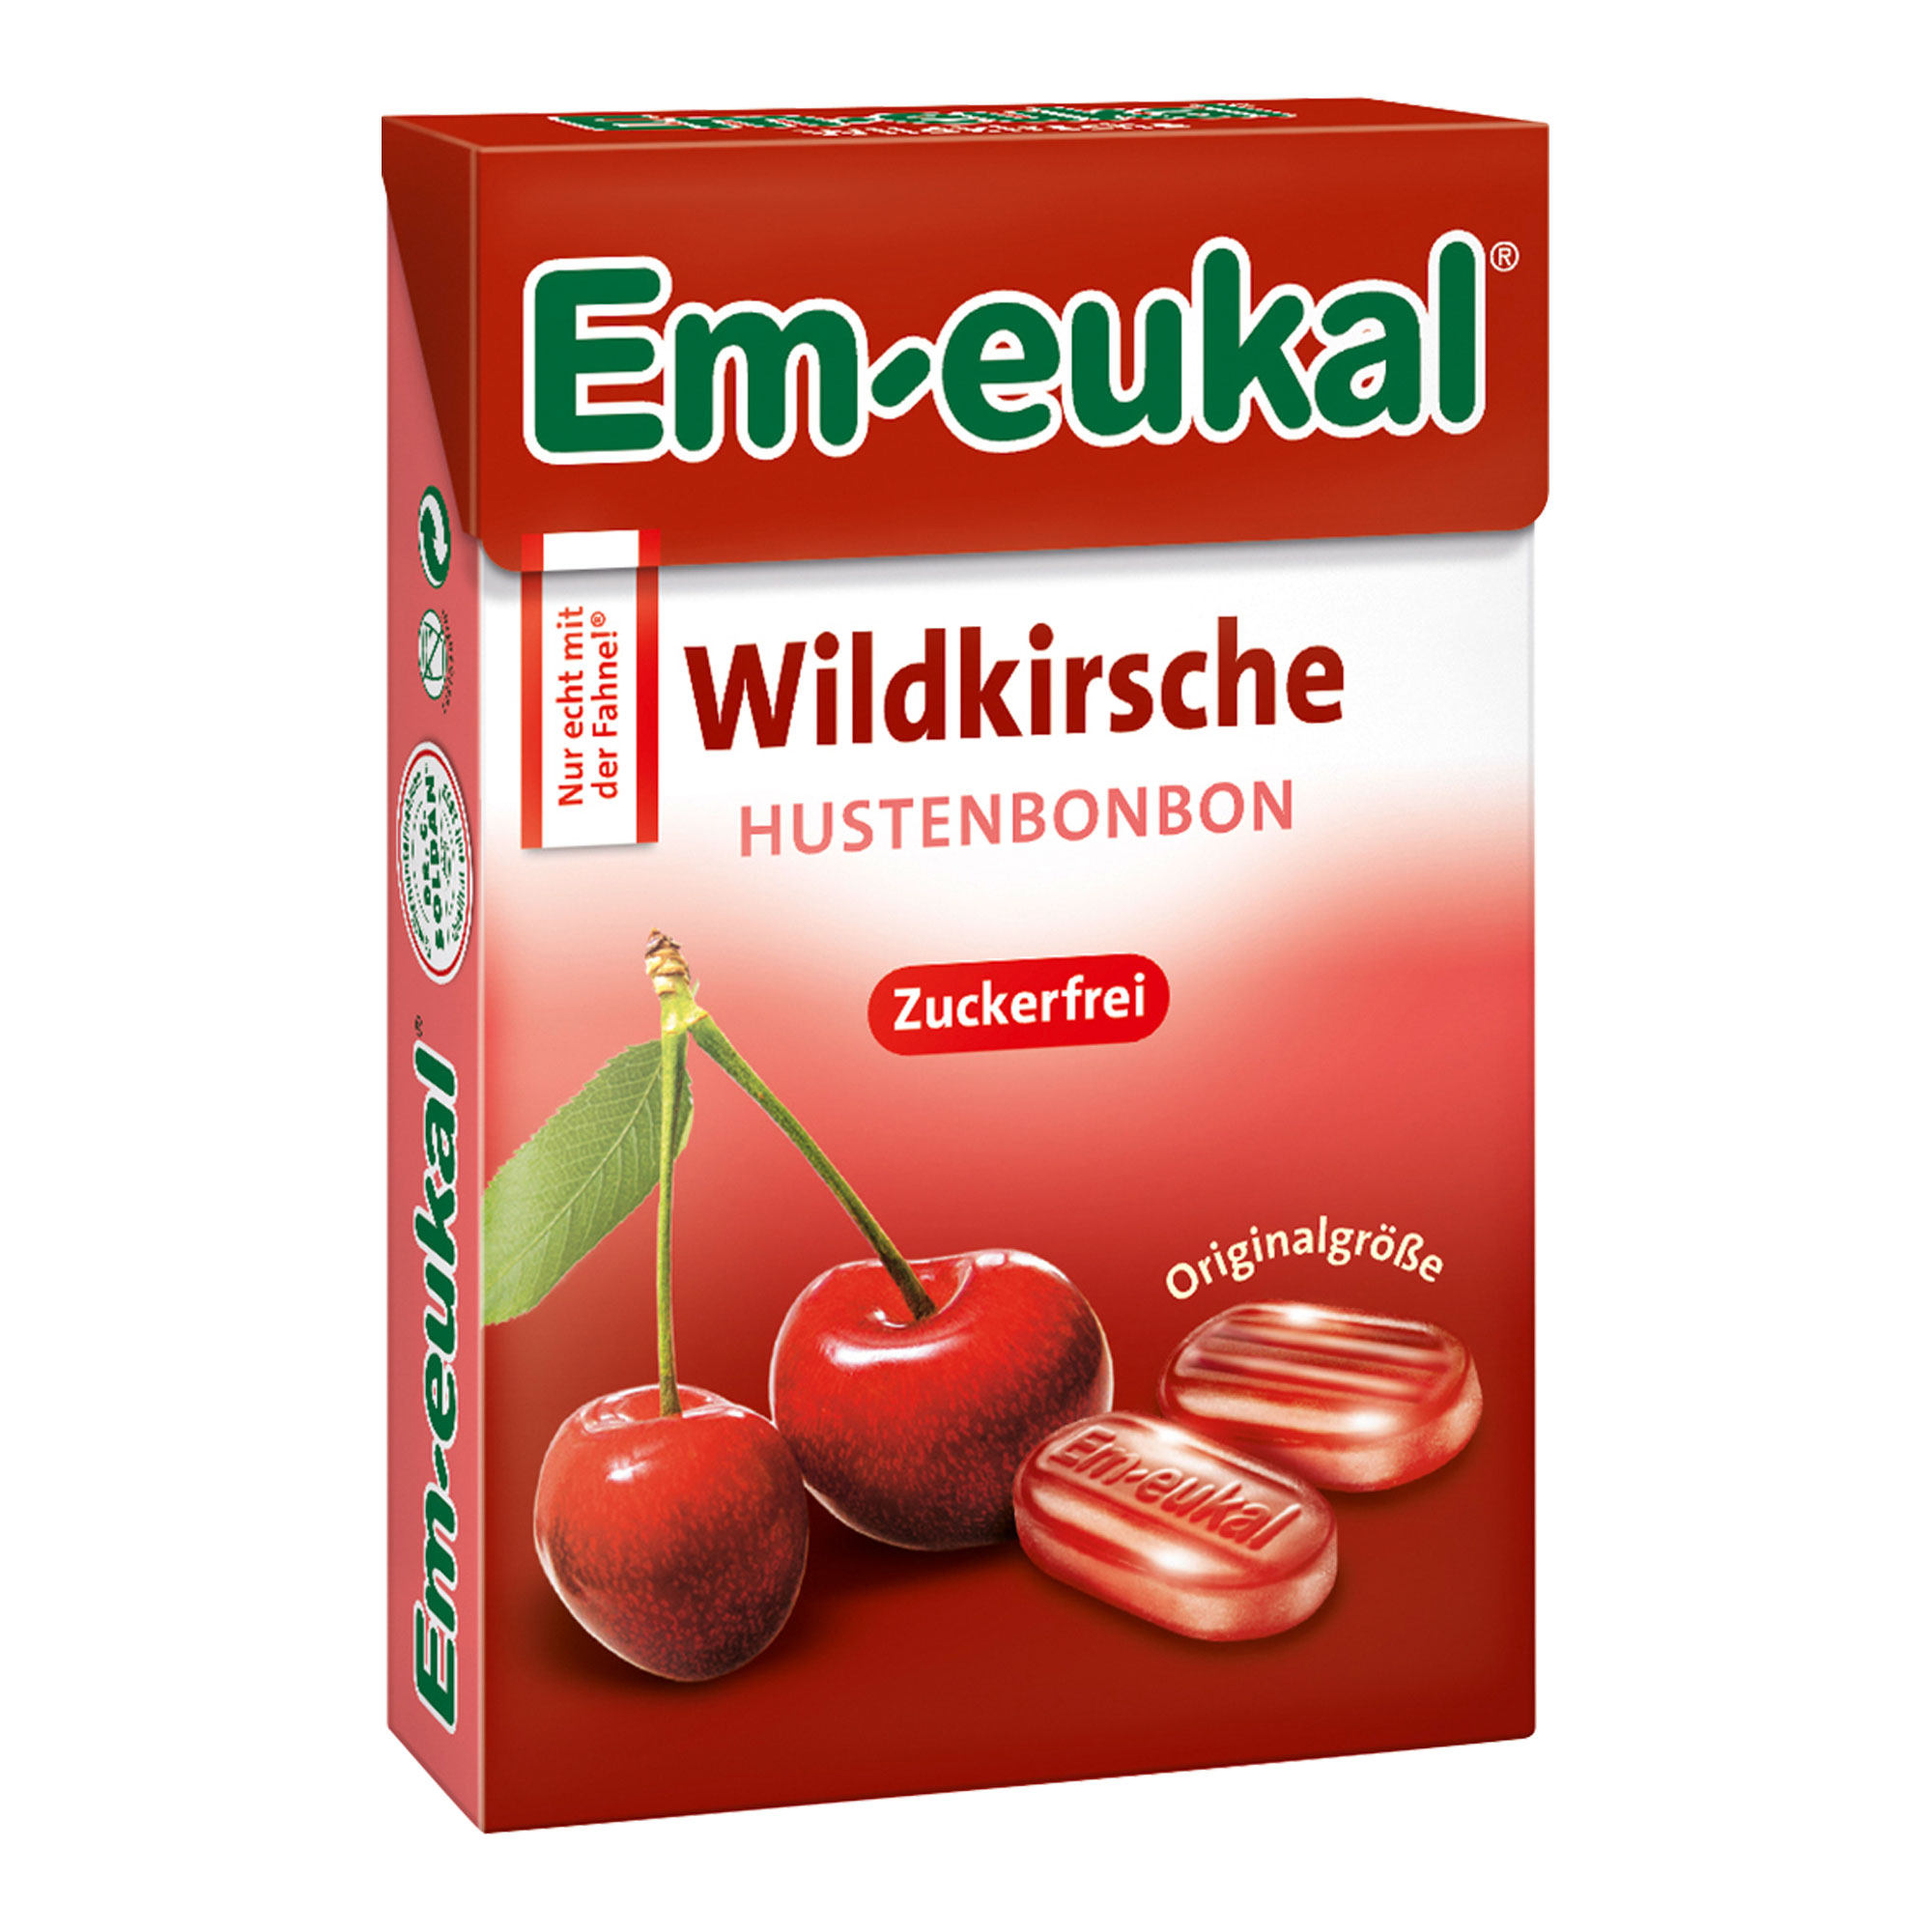 Zuckerfreie Wildkirsche-Hustenbonbons mit leichter Mentholnote.